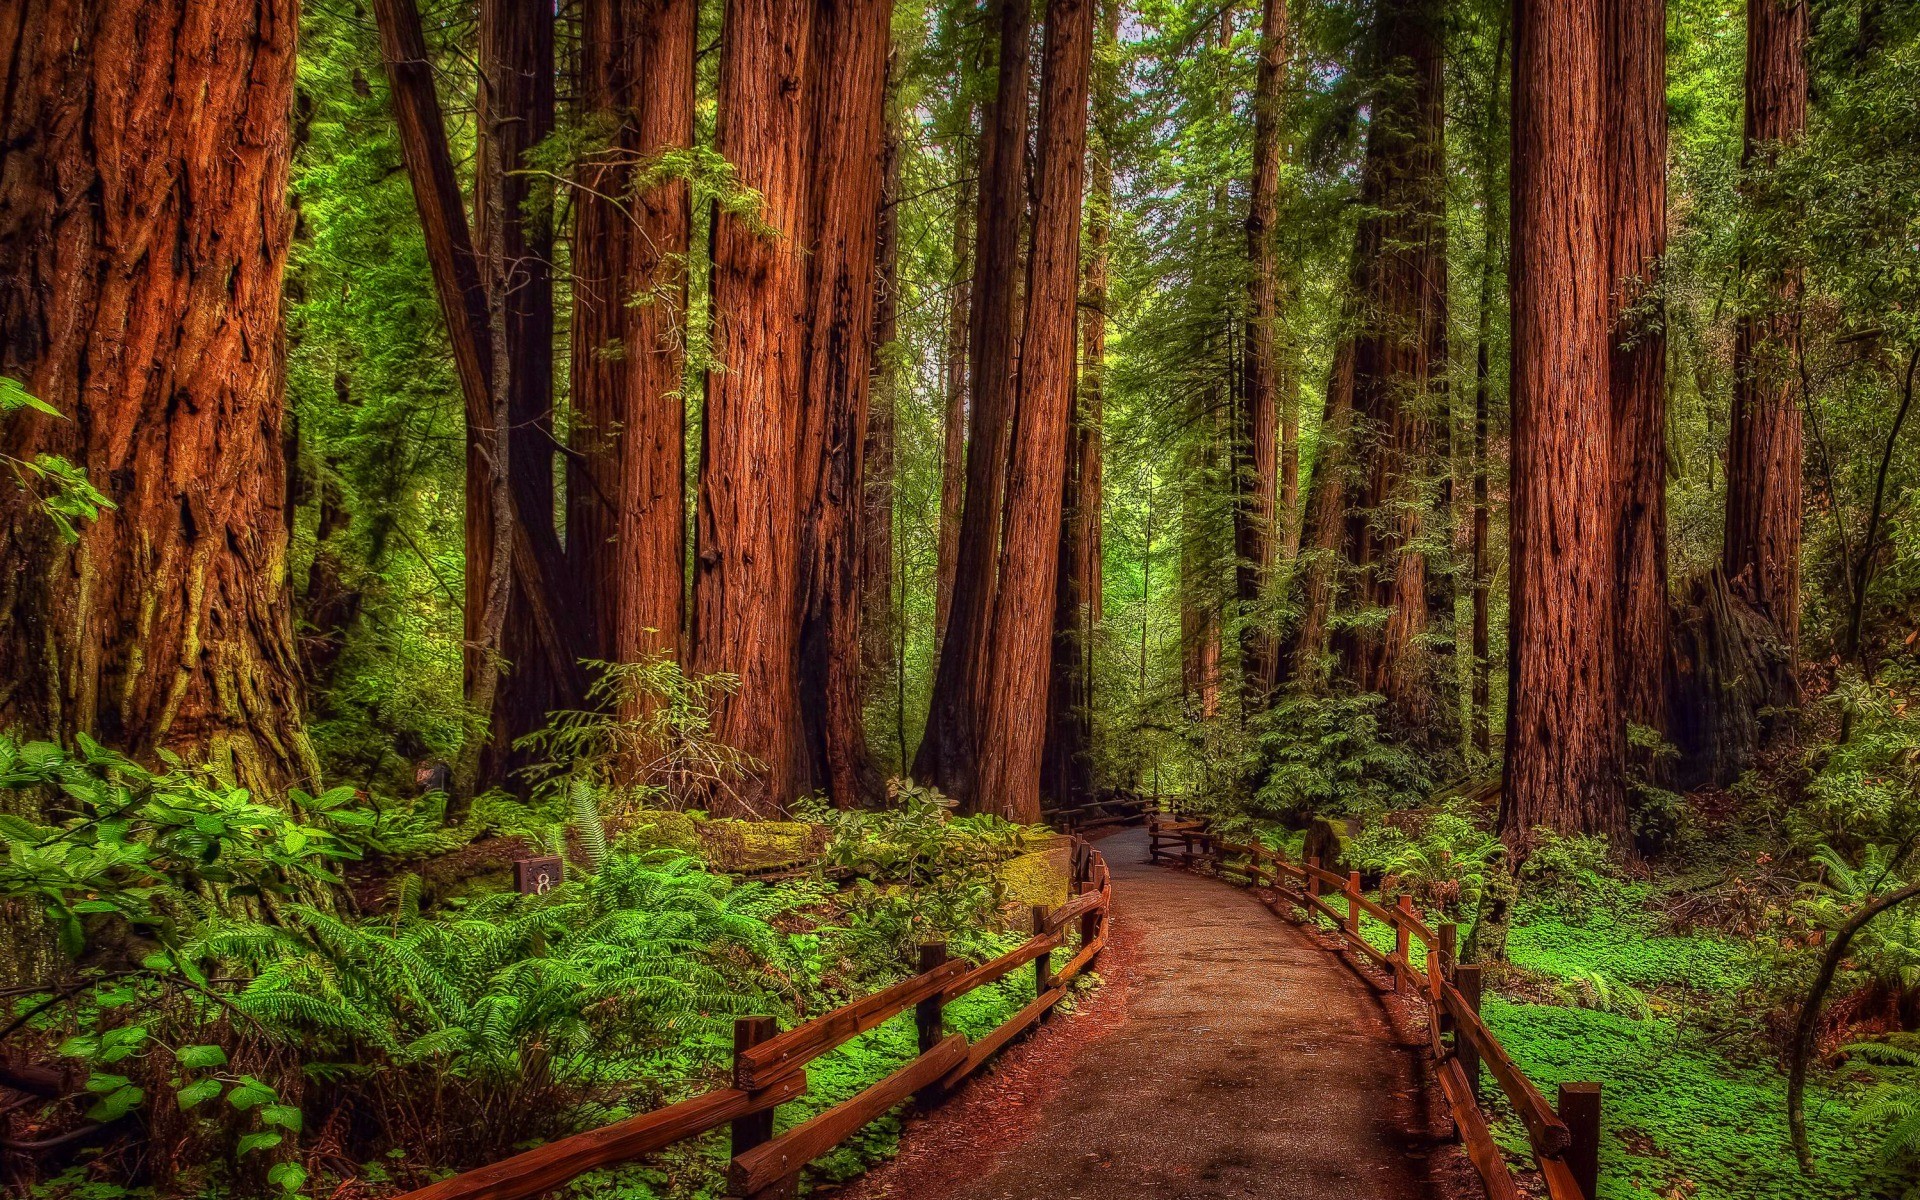 Bạn đang tìm kiếm hình nền phù hợp cho máy tính của mình? Hãy thử ngay bộ ảnh nền rừng cây Redwood đầy uyển chuyển và nổi bật. Sự tươi mới của các lá cây và sắc đỏ của thân cây sẽ mang đến một không gian làm việc rất độc đáo.